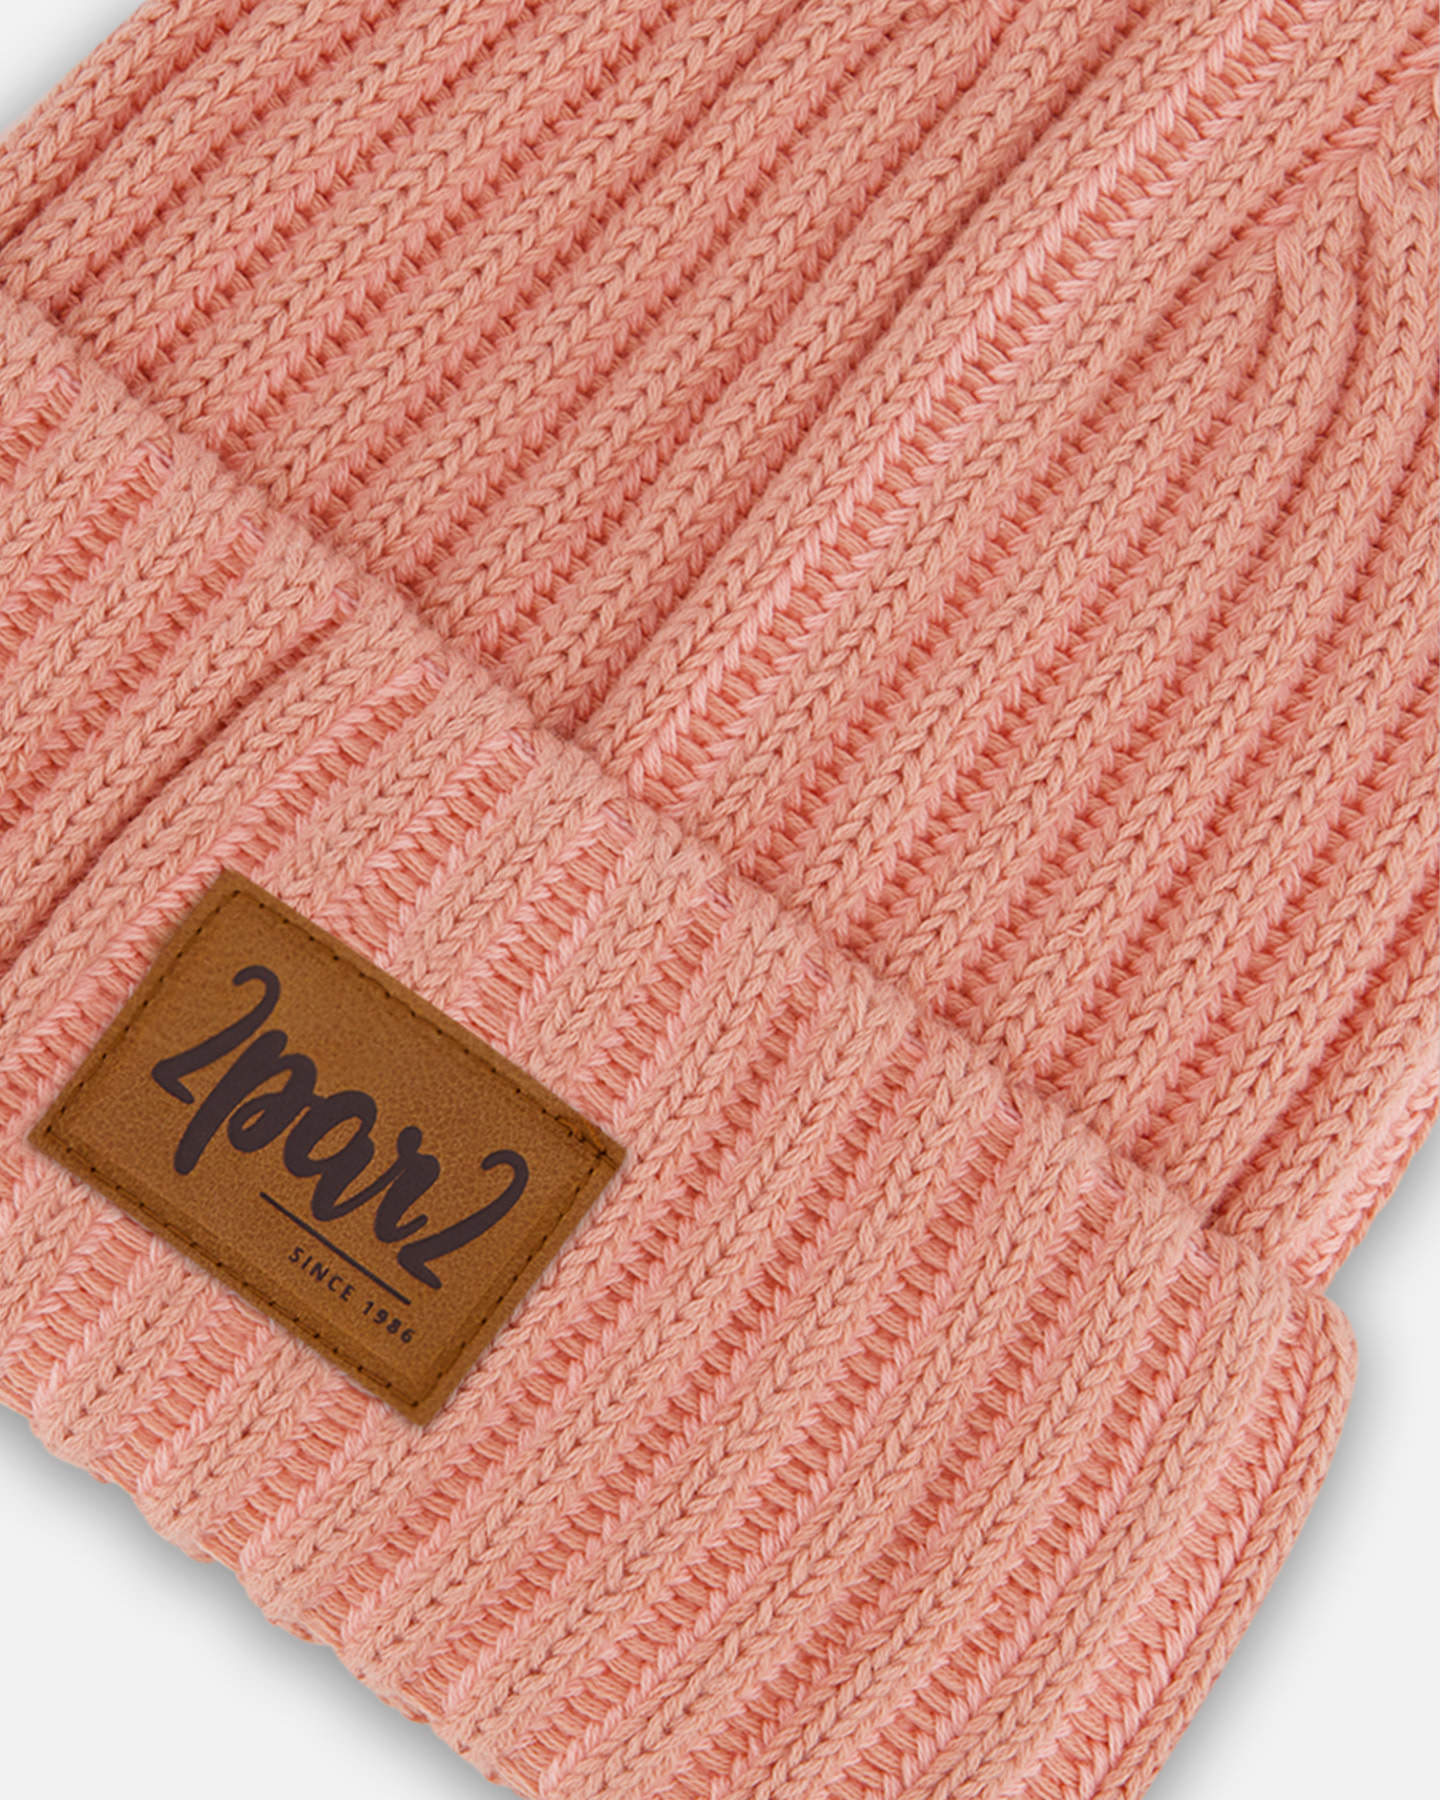 Tuque en tricot - ROSE TAN-2